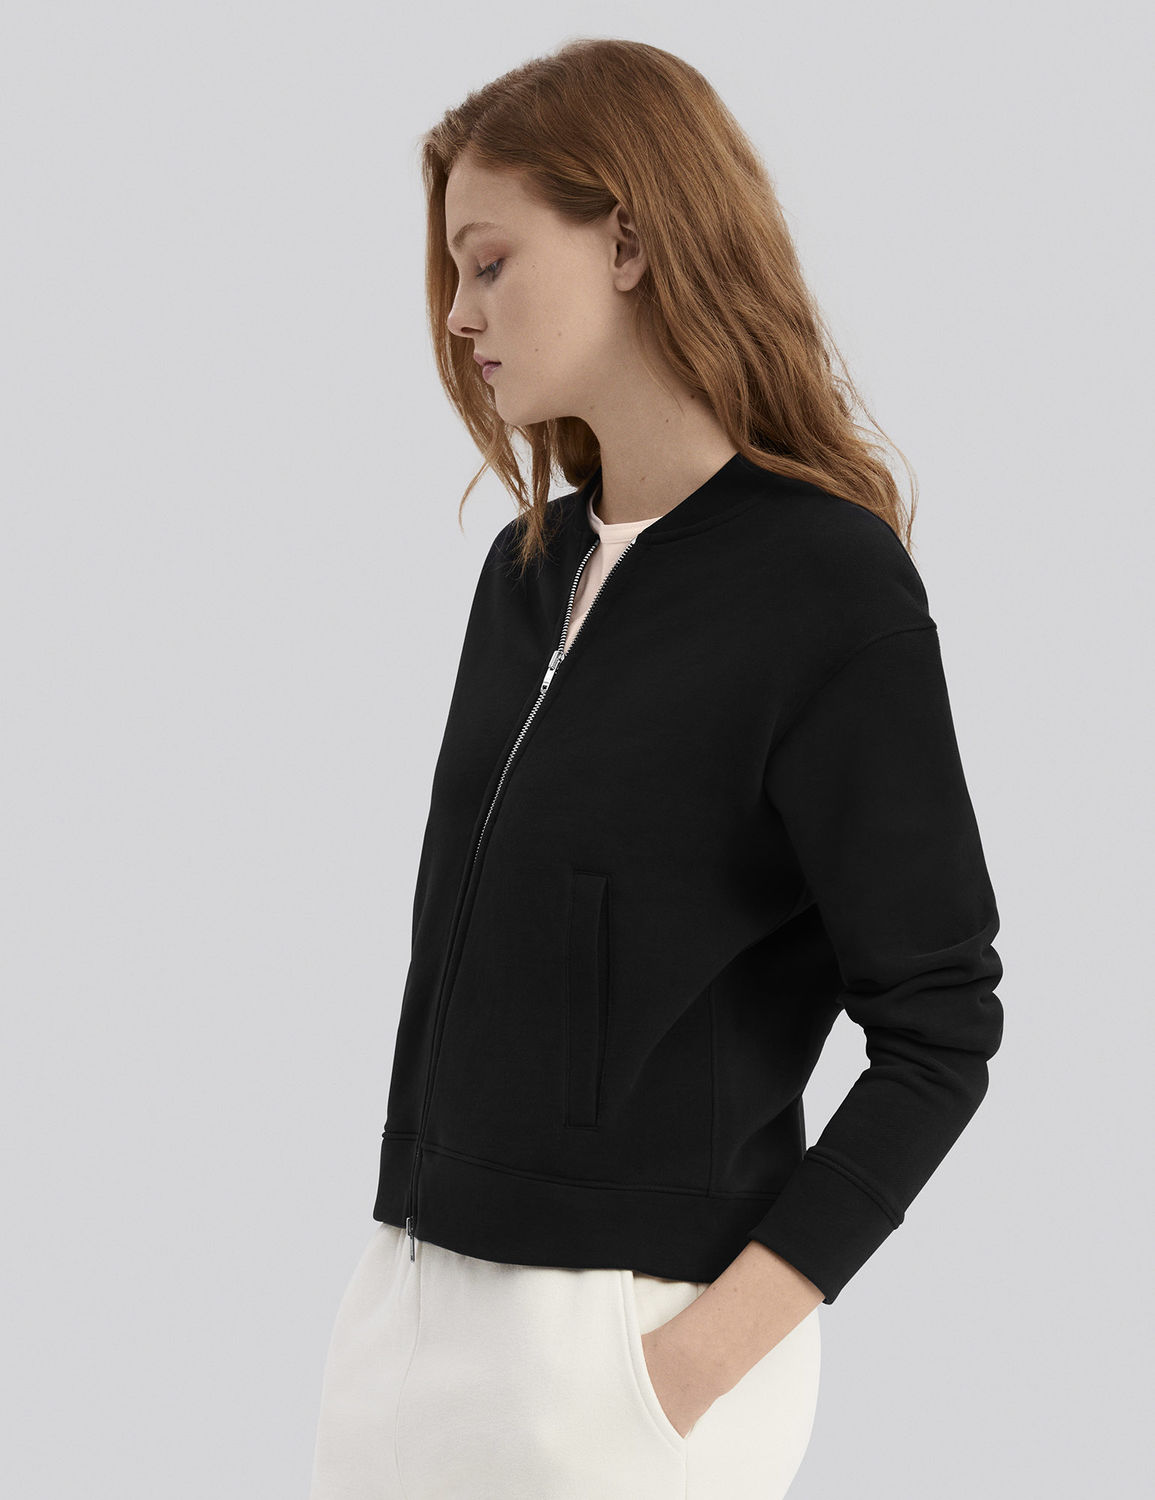 women's black zip-up sweater bomber